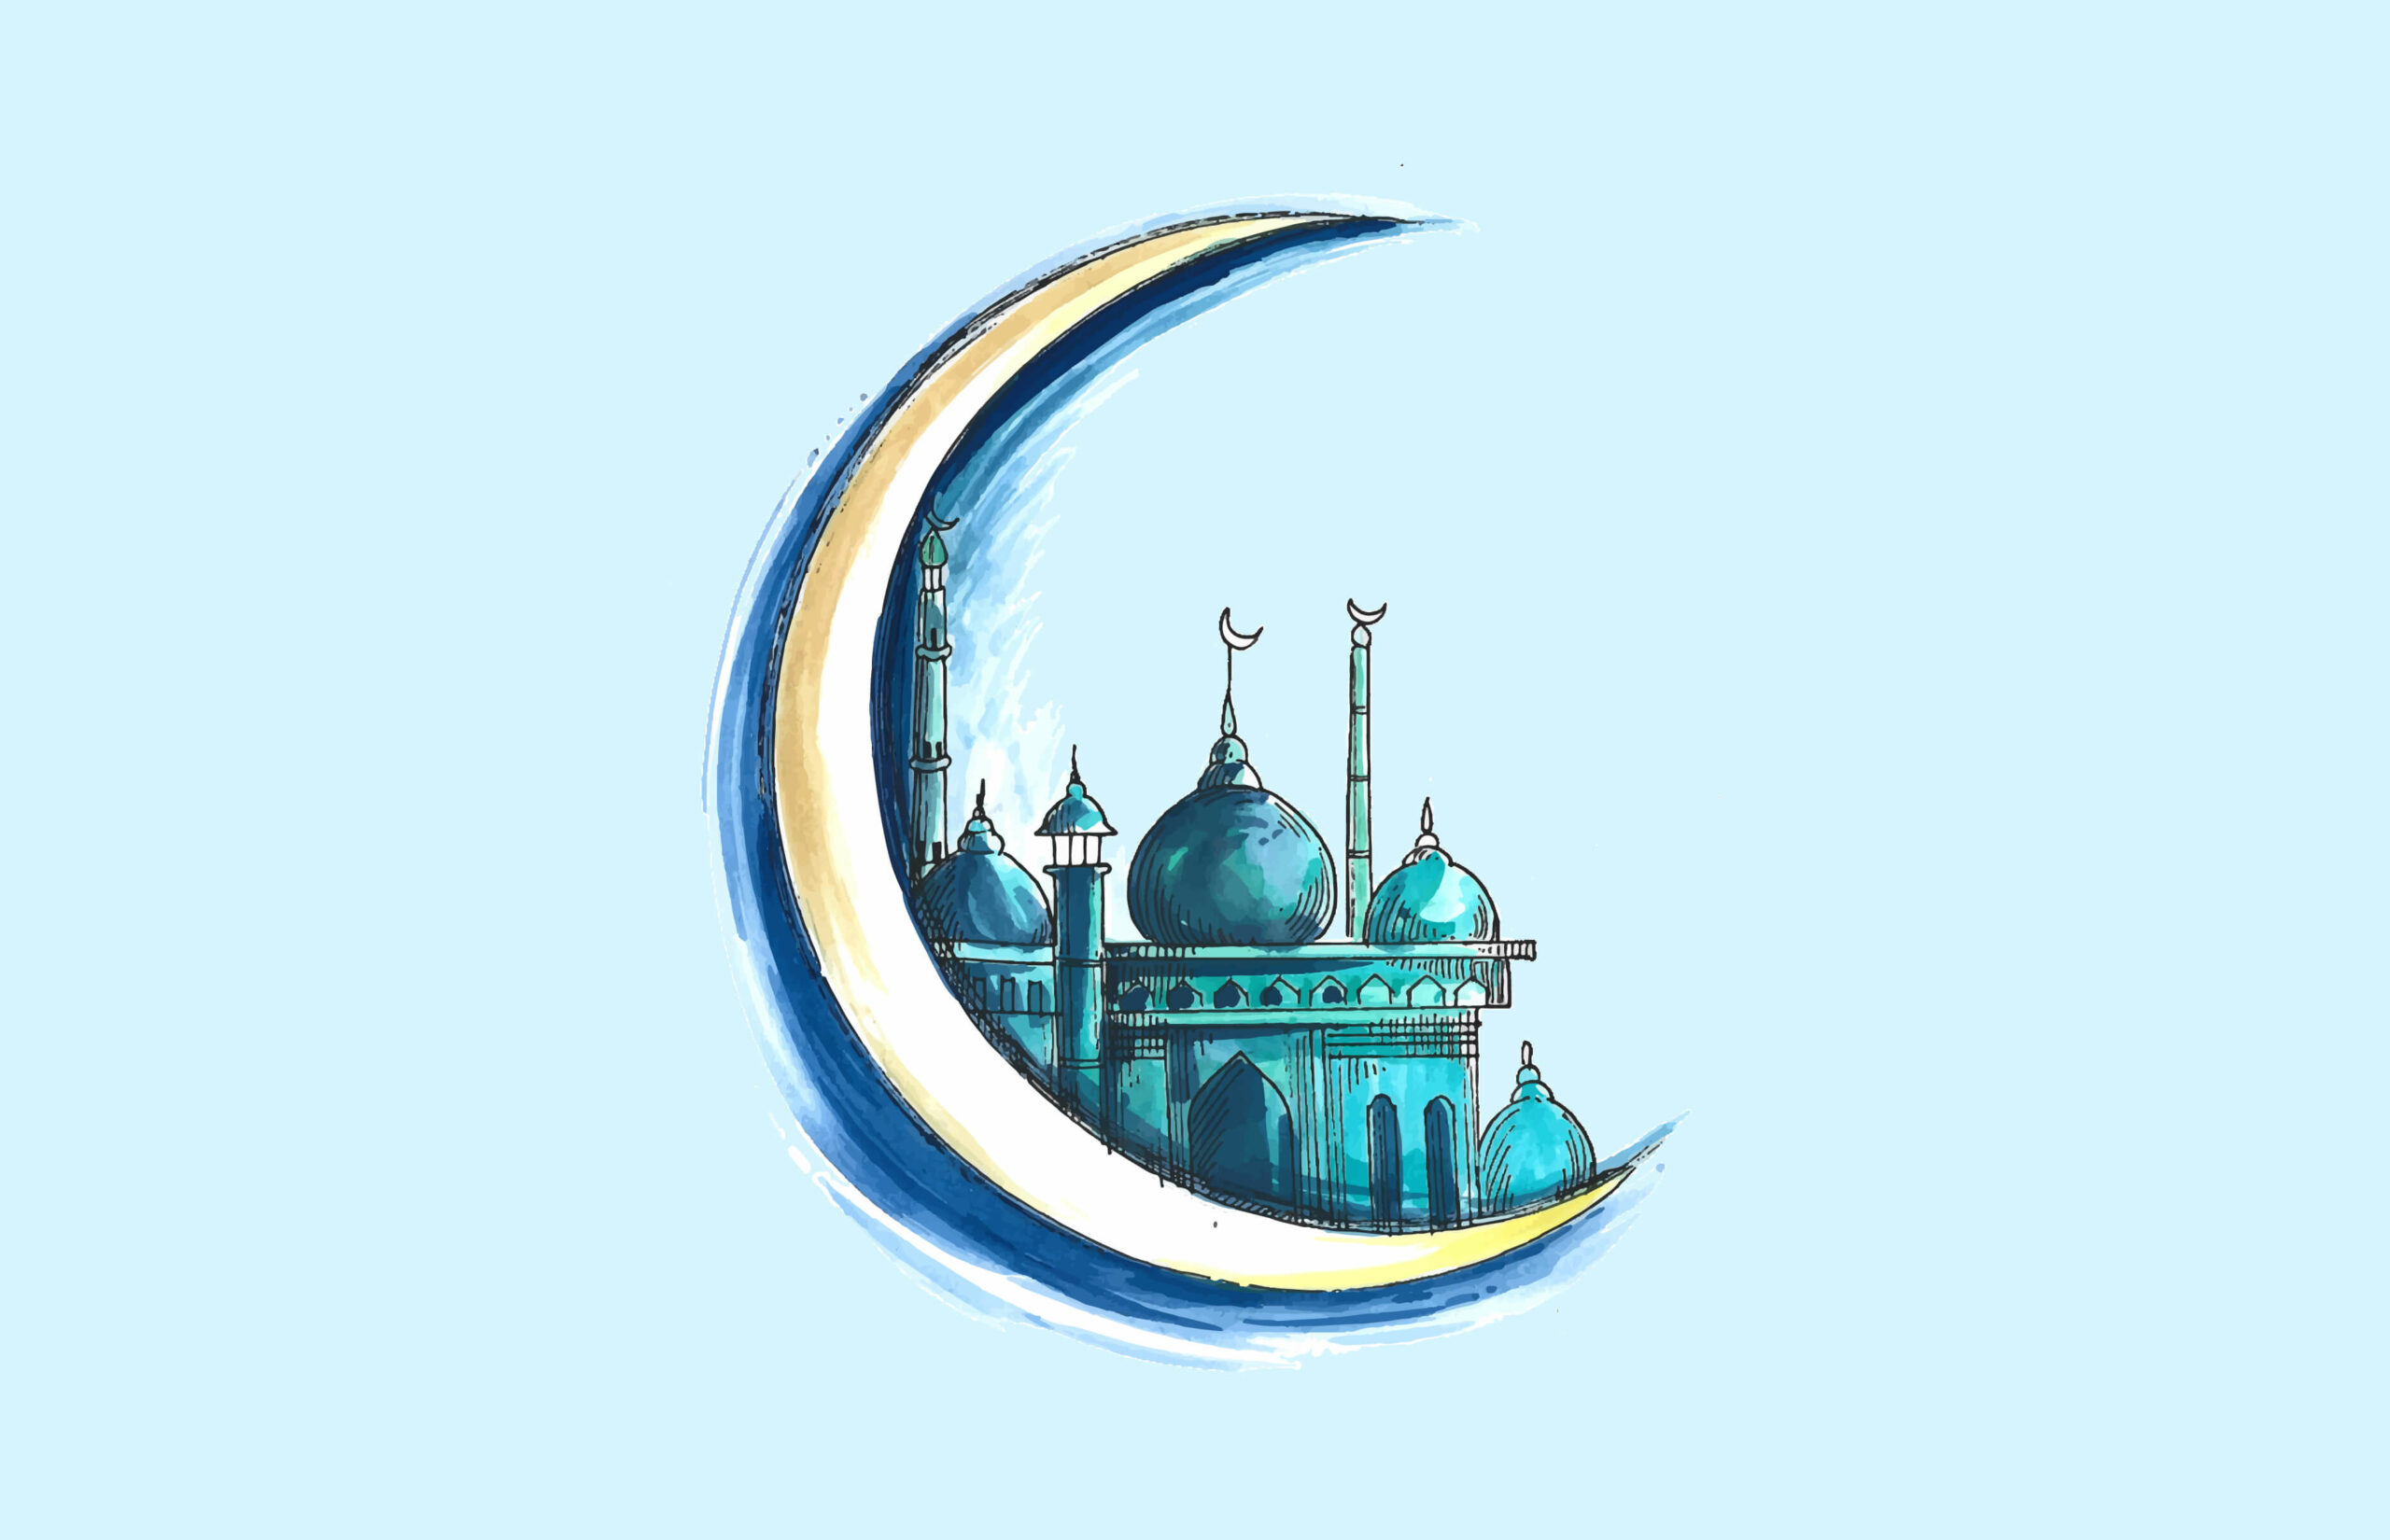 Eid al-Fitr 2022 Date In UAE